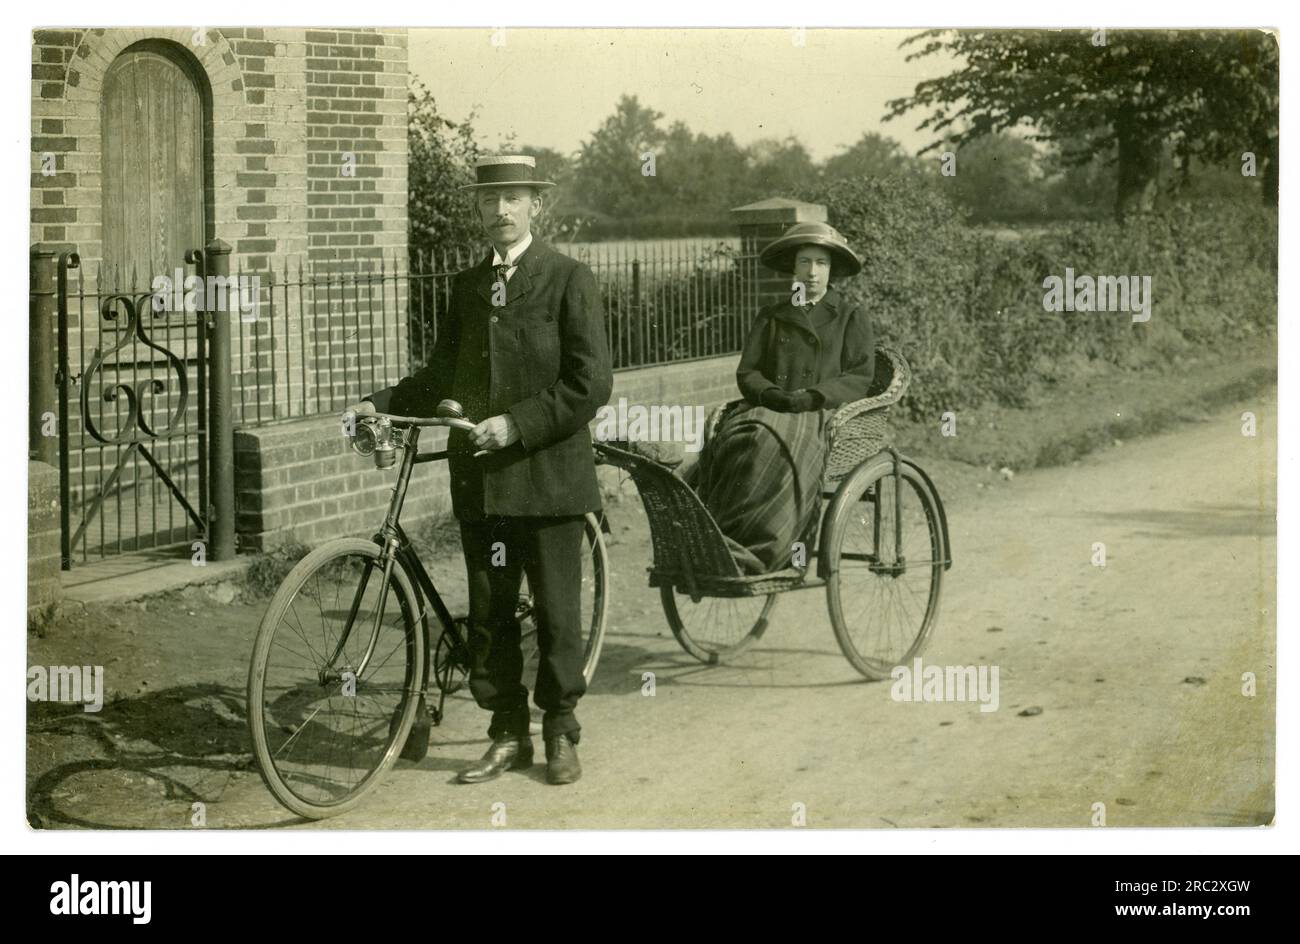 Carte postale de l'ère édouardienne du début des années 1900 d'un couple à vélo à la campagne, la femme est assise dans une remorque / chaise de bain (fauteuil roulant tôt) attachée au vélo tandis que le mari fait tout le travail. Vélo cargo tôt! Circa 1910, Royaume-Uni Banque D'Images